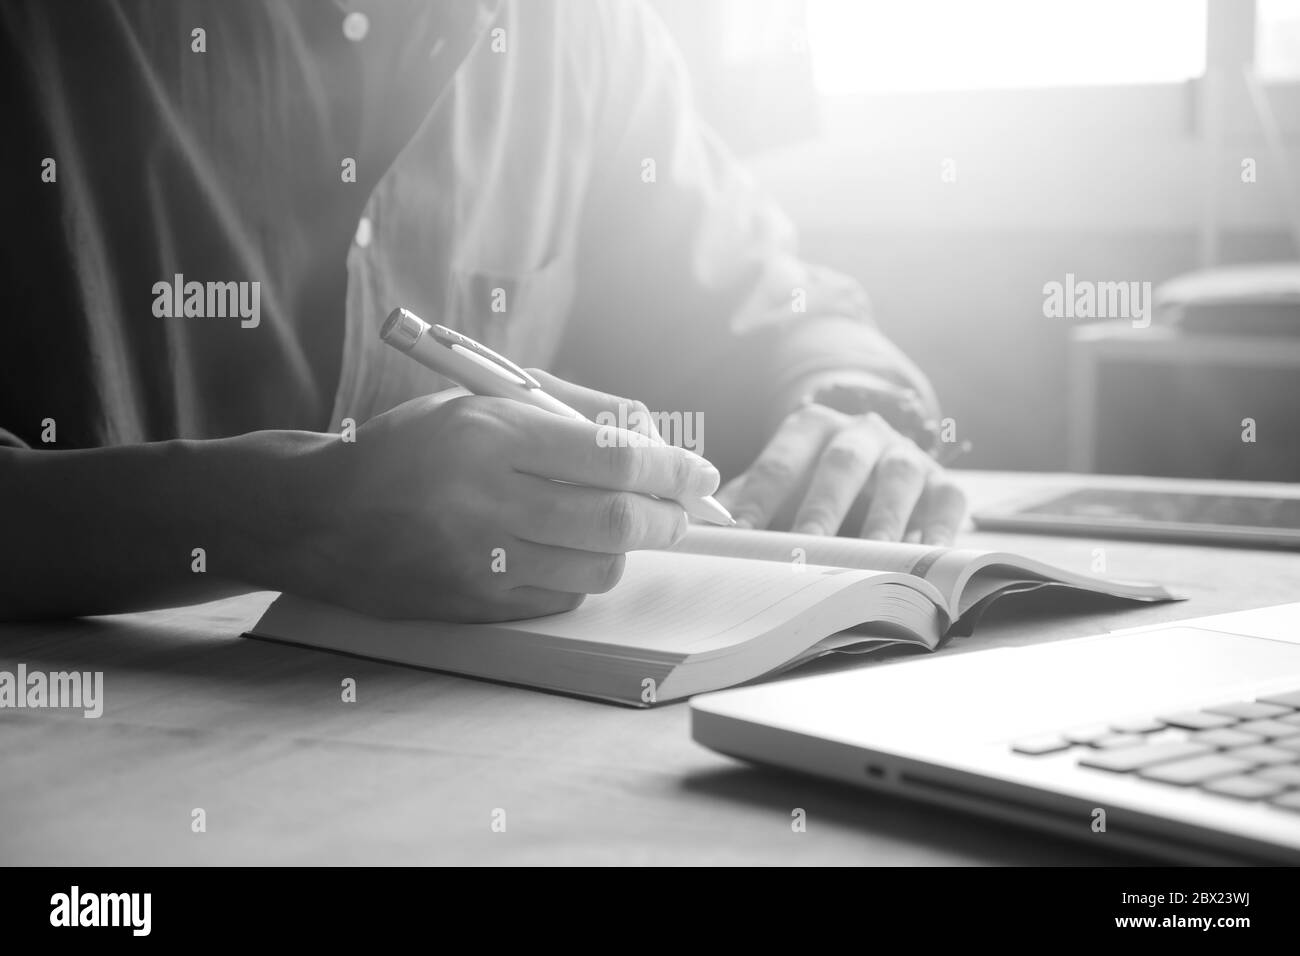 Nahaufnahme eines zwanglosen Mannes, der einen Notizbericht schreibt und einen Laptop auf dem Schreibtisch benutzt, der von Sonnenlicht durchstrahlt wird Stockfoto